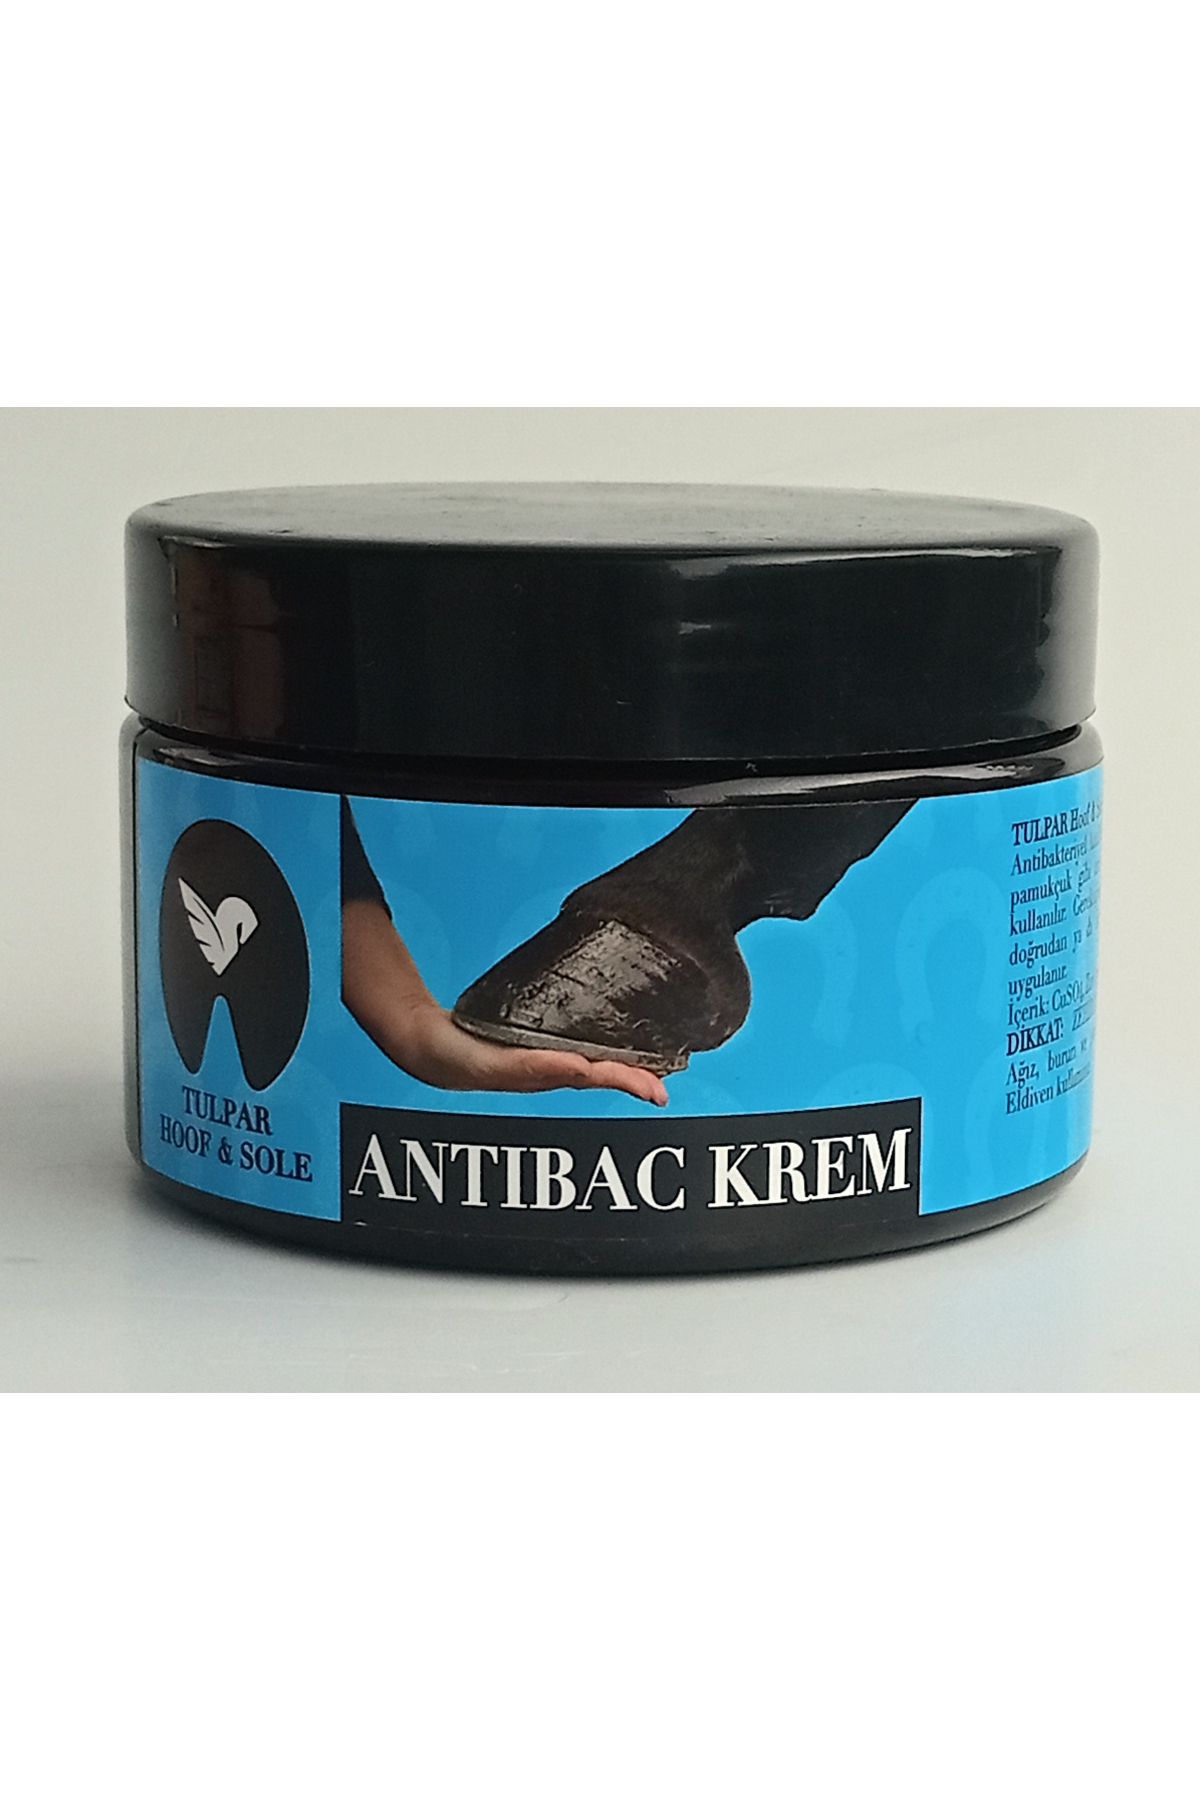 Tulpar Antifungal Toynak kremi (ATLAR, Büyükbaş ve Küçükbaş Hayvanlar için) - 250 gr